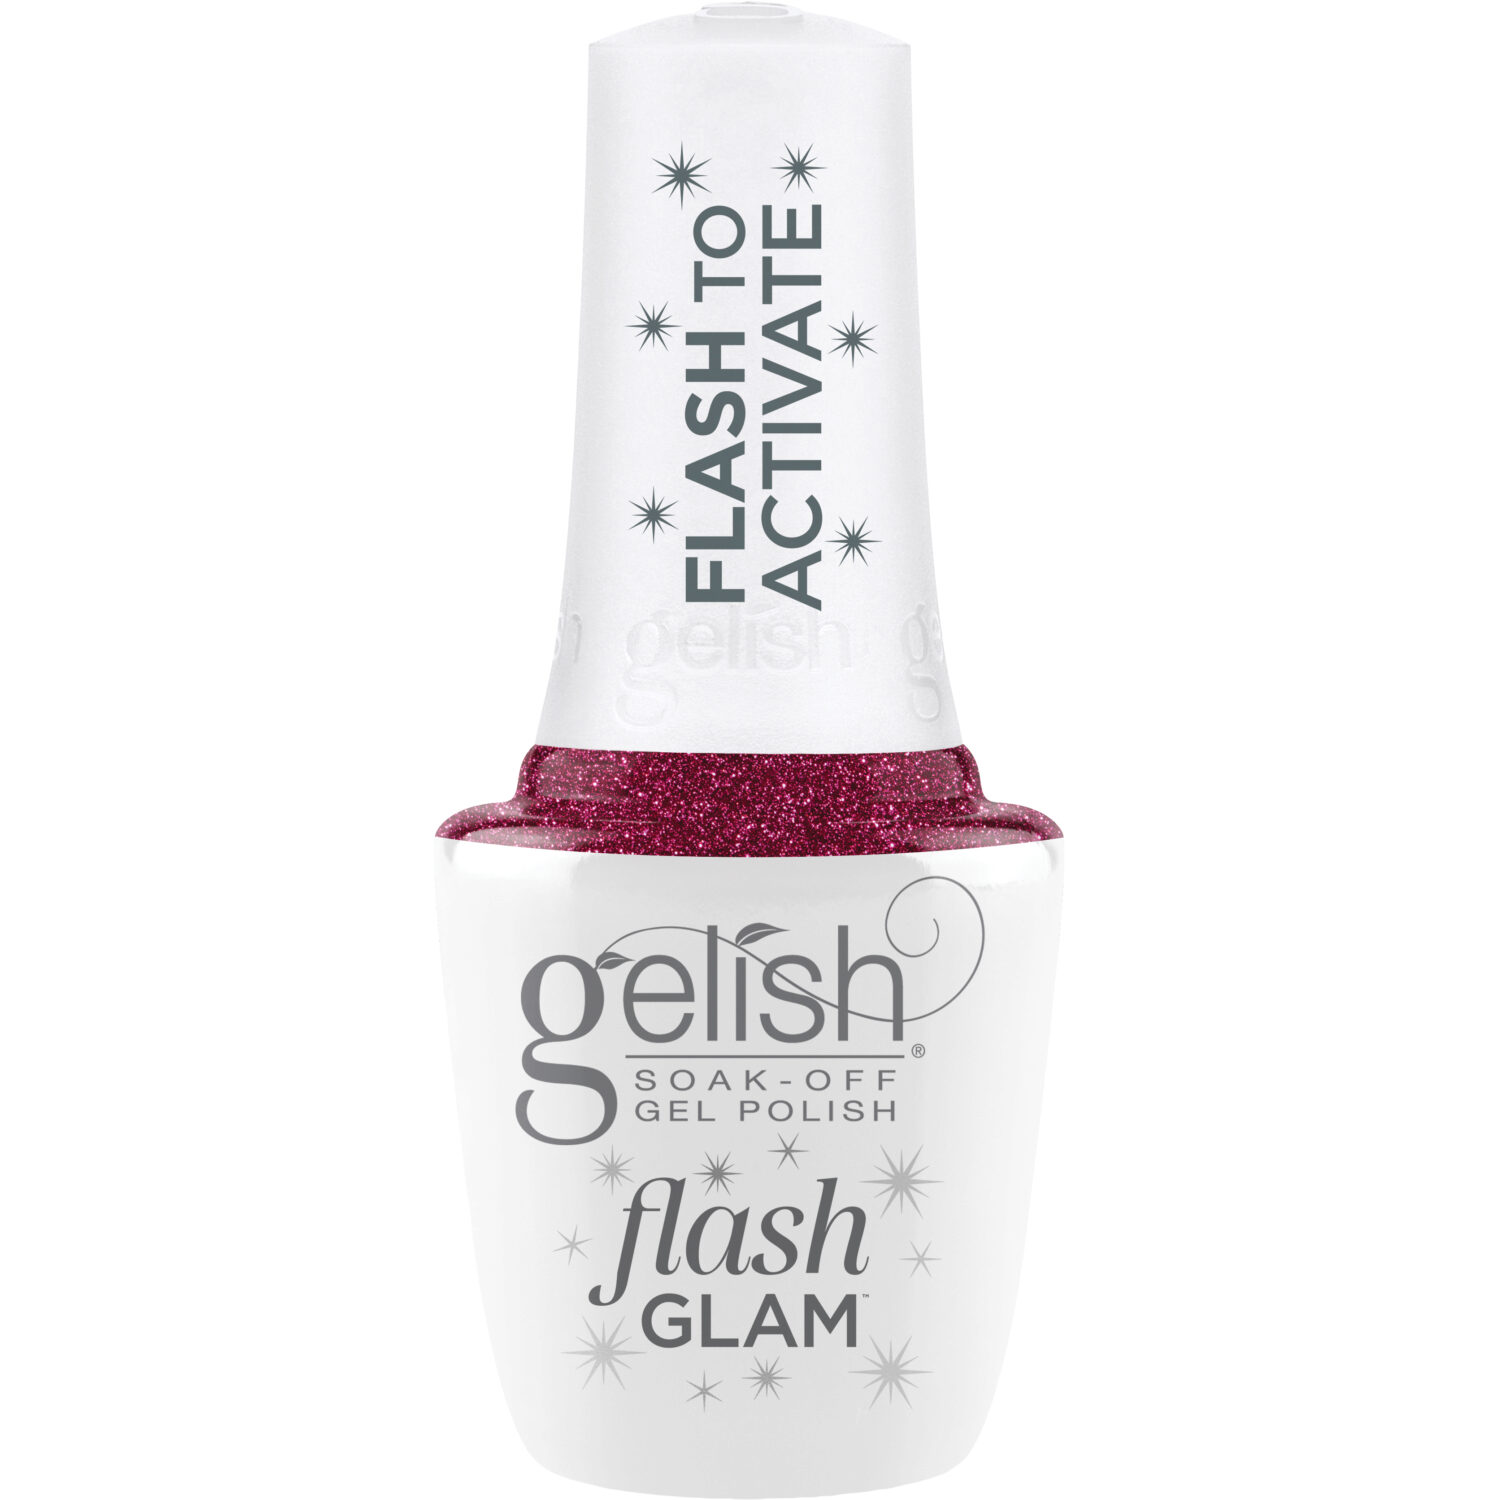 Gelish Flash Glam Mesmerized By You Glitter Gel Polish, 0.5 fl oz.